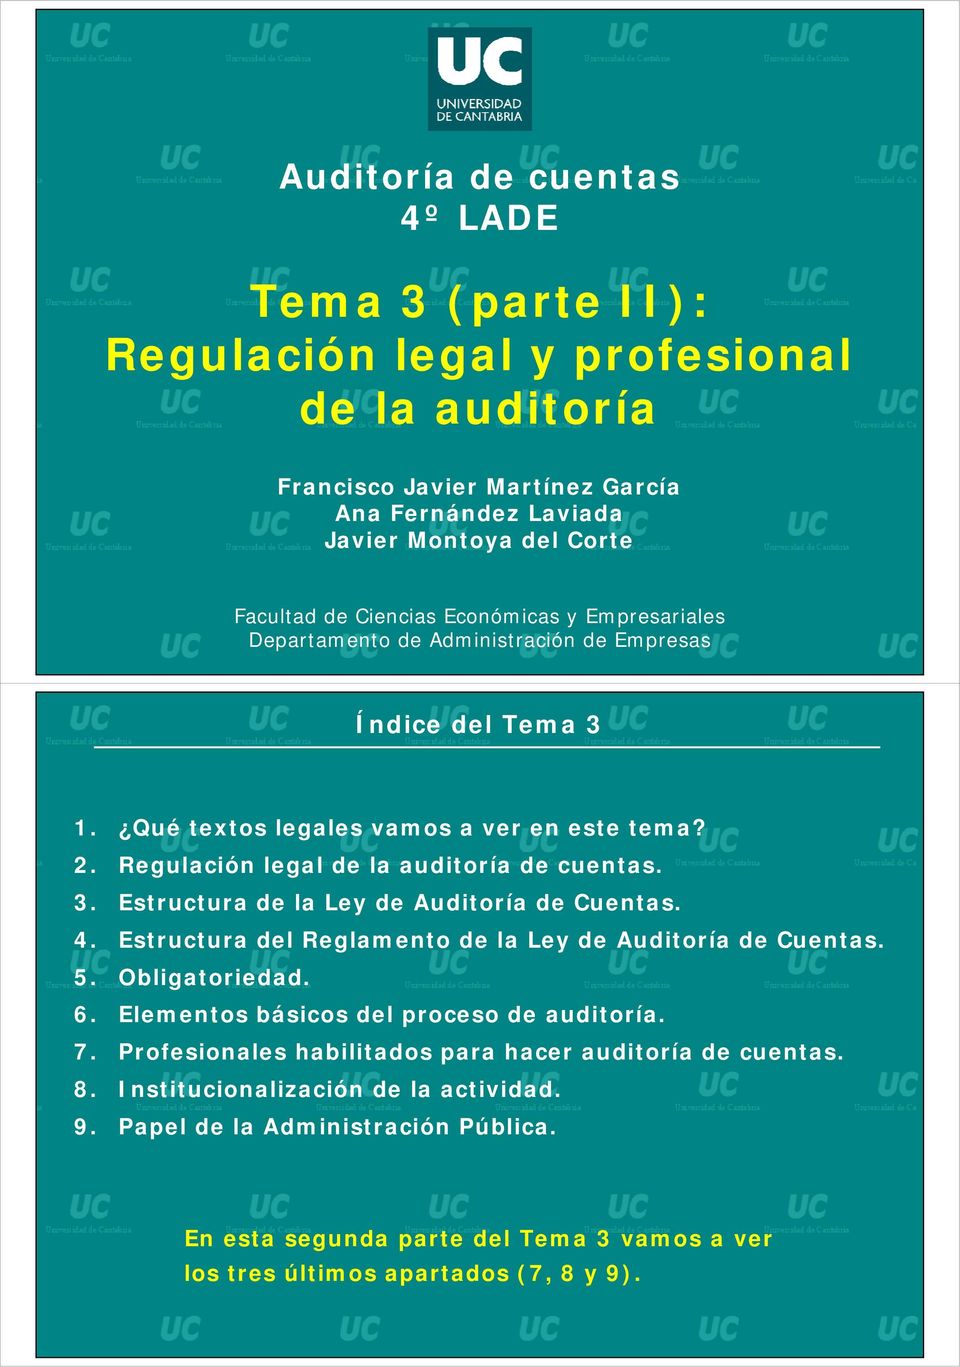 4. Estructura del Reglamento de la Ley de Auditoría de Cuentas. 5. Obligatoriedad. 6. Elementos básicos del proceso de auditoría. 7. Profesionales habilitados para hacer auditoría de cuentas. 8.